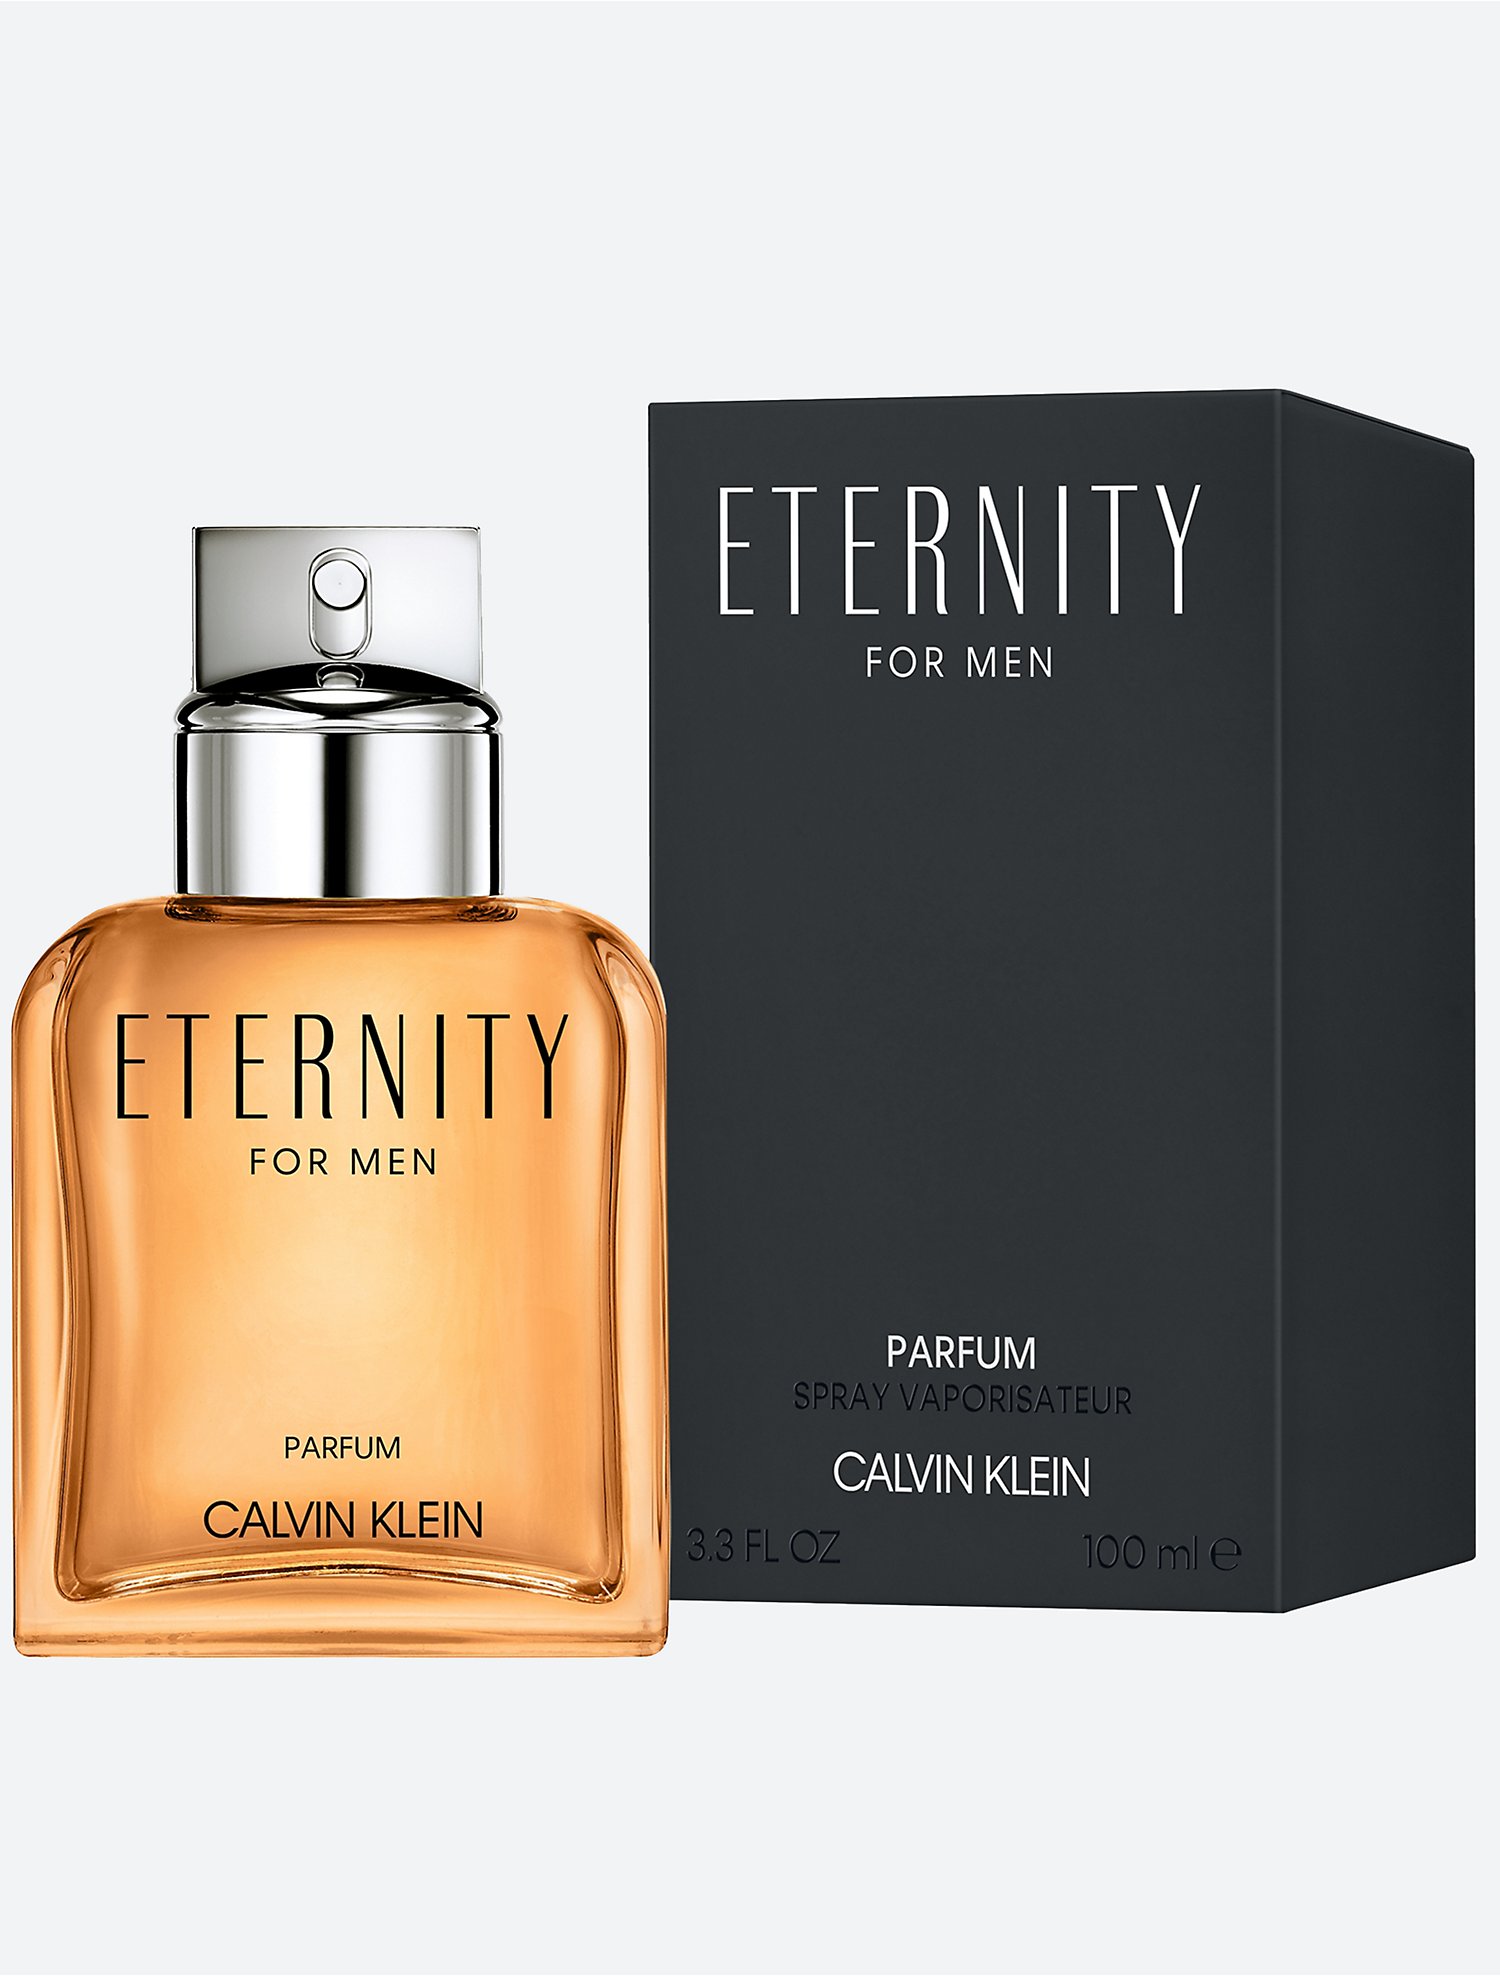 De waarheid vertellen Communisme Vesting Eternity Eau de Parfum For Men | Calvin Klein